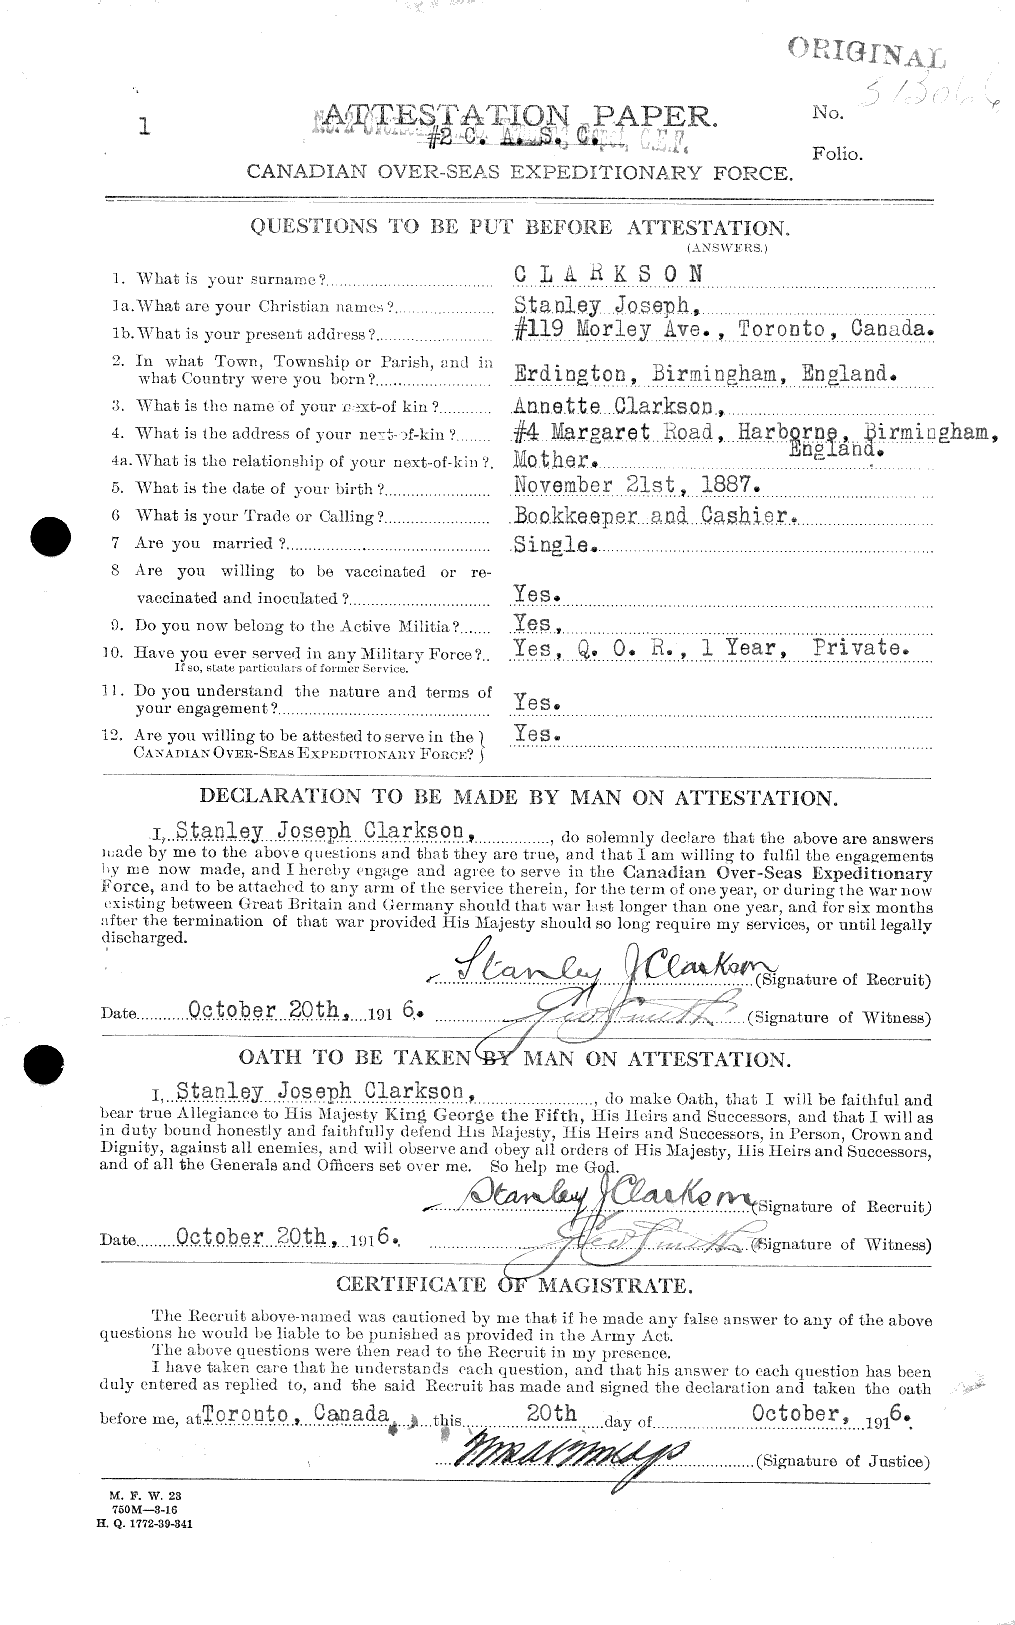 Dossiers du Personnel de la Première Guerre mondiale - CEC 019011a